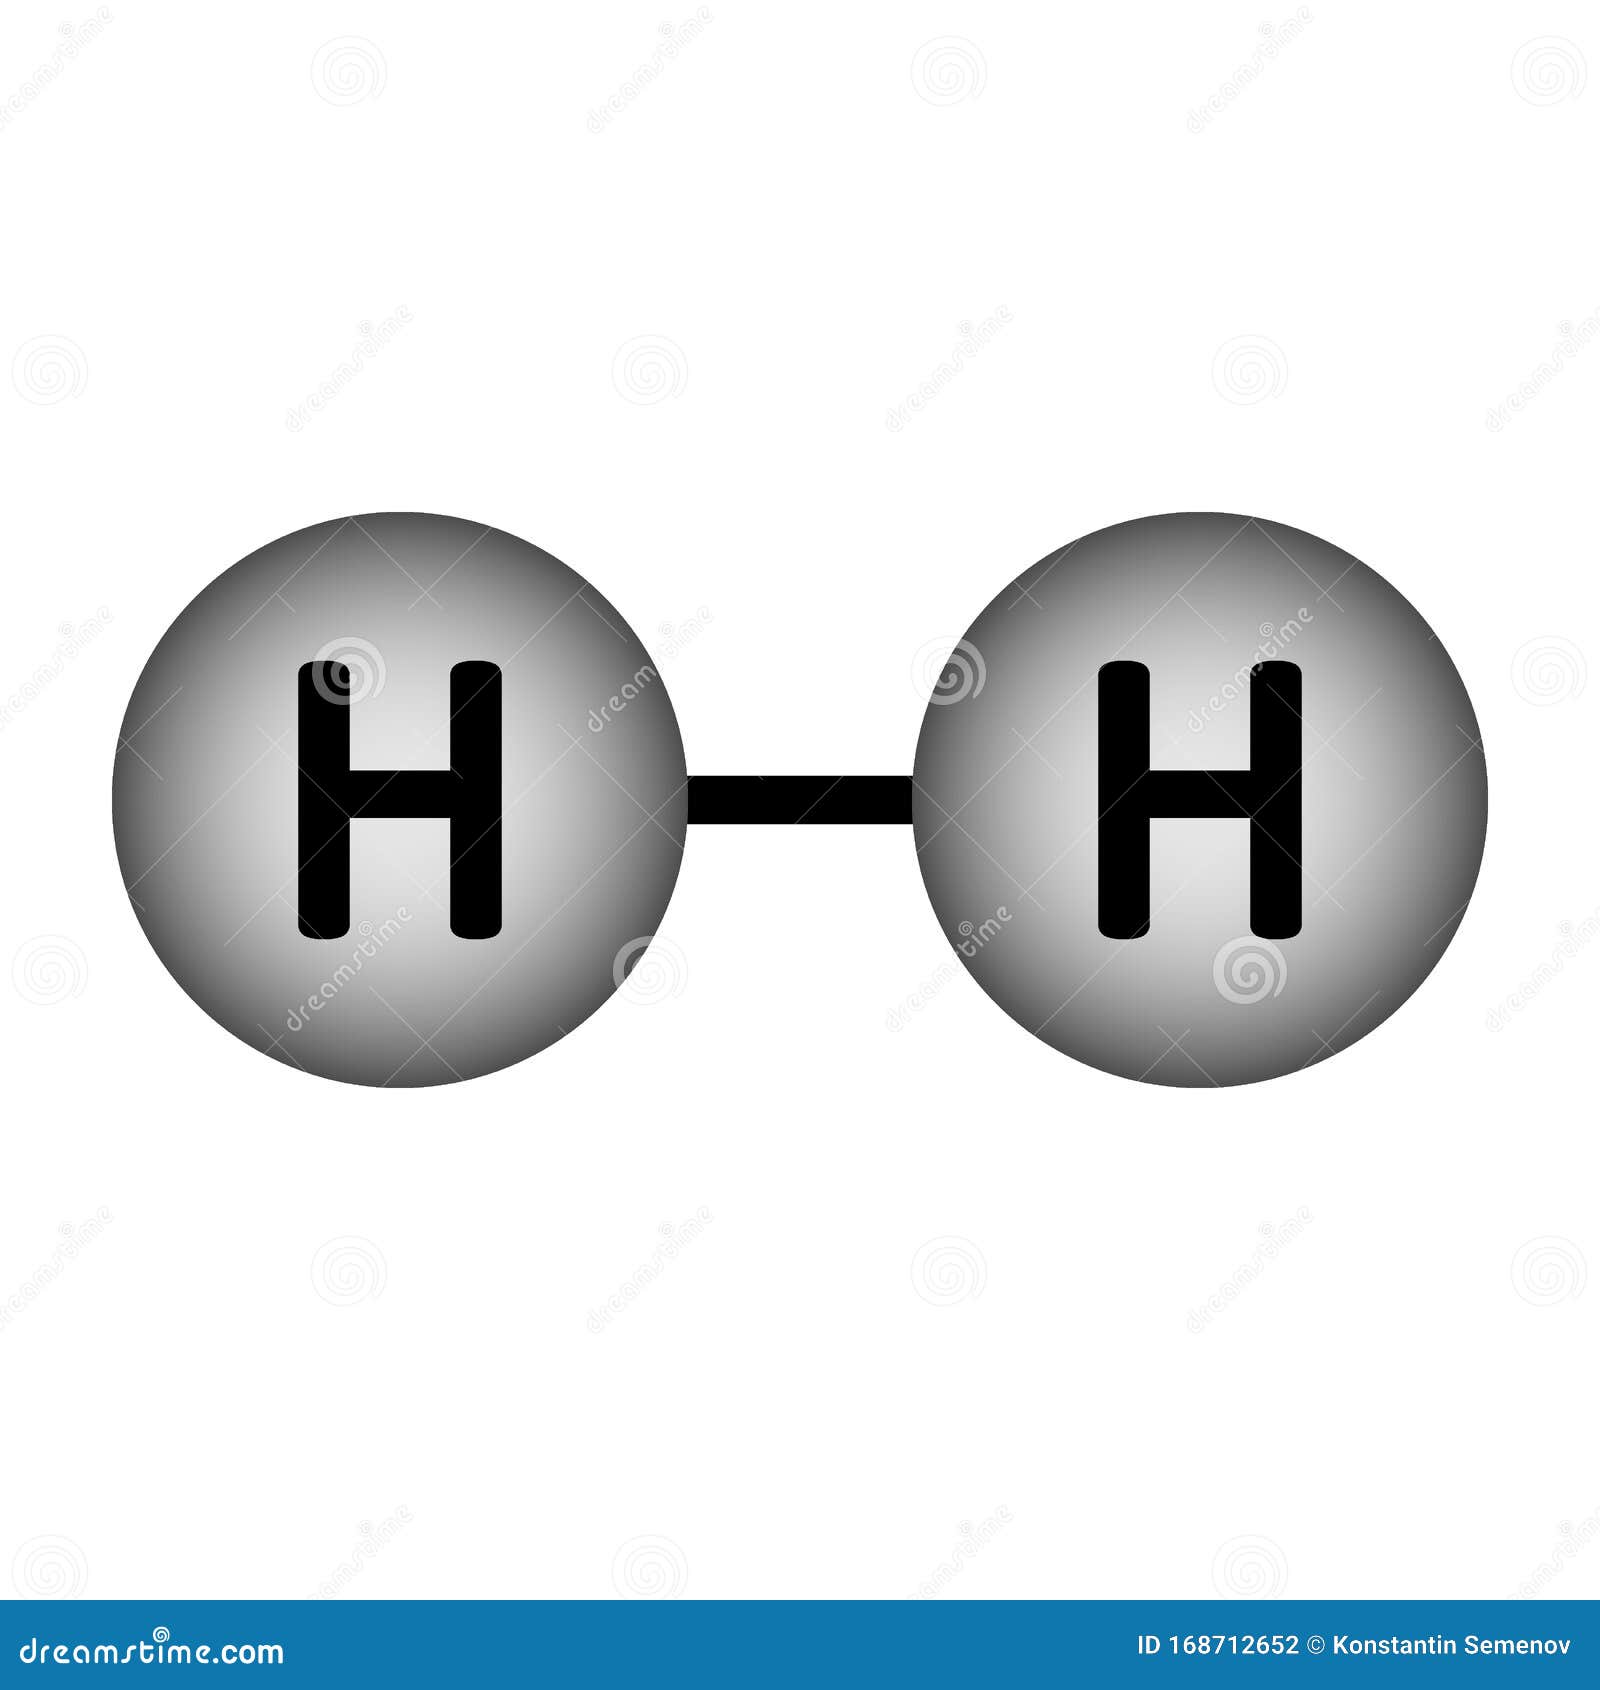 Hydrogen Molecule Model